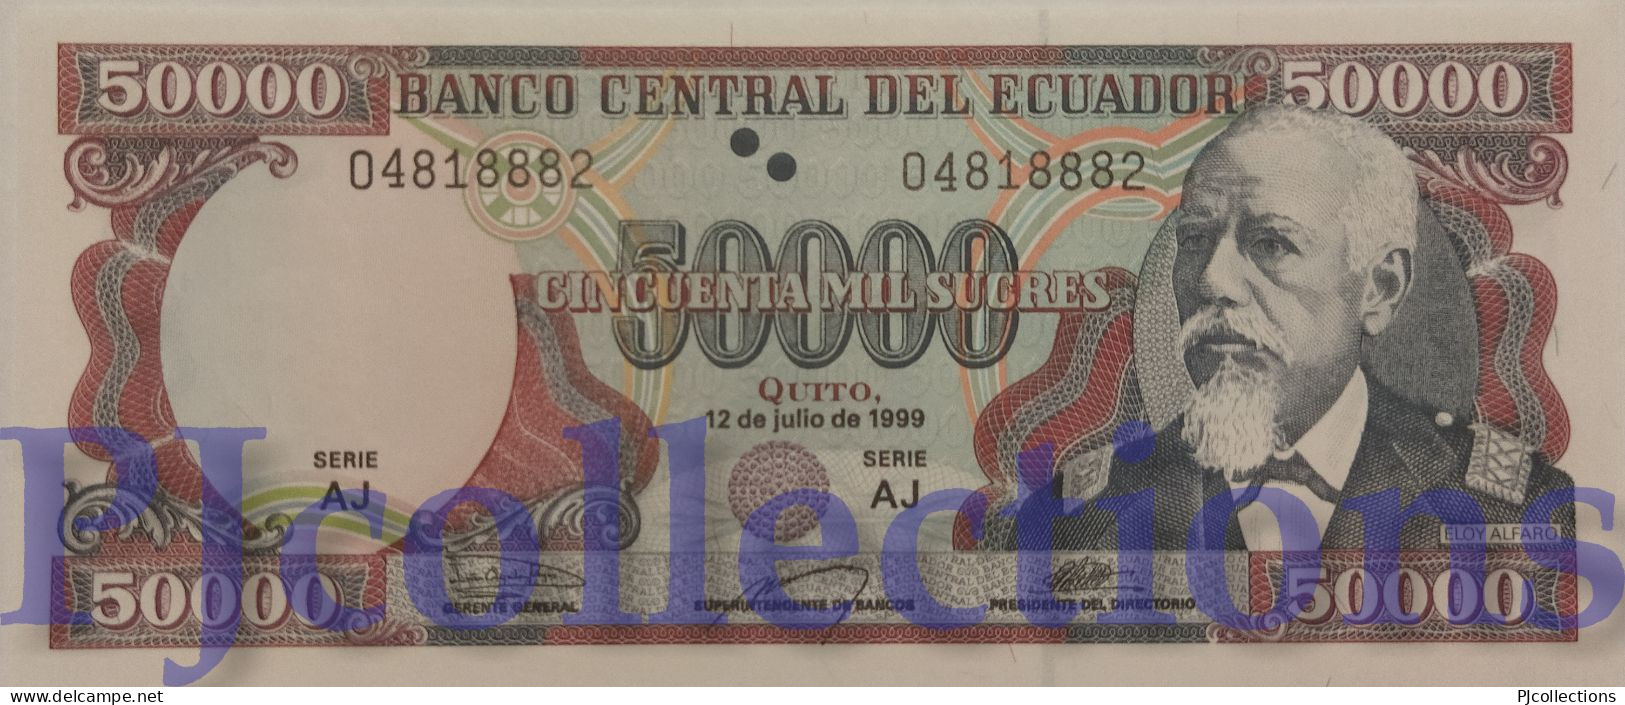 ECUADOR 50000 SUCRES 1999 PICK 130d UNC - Ecuador